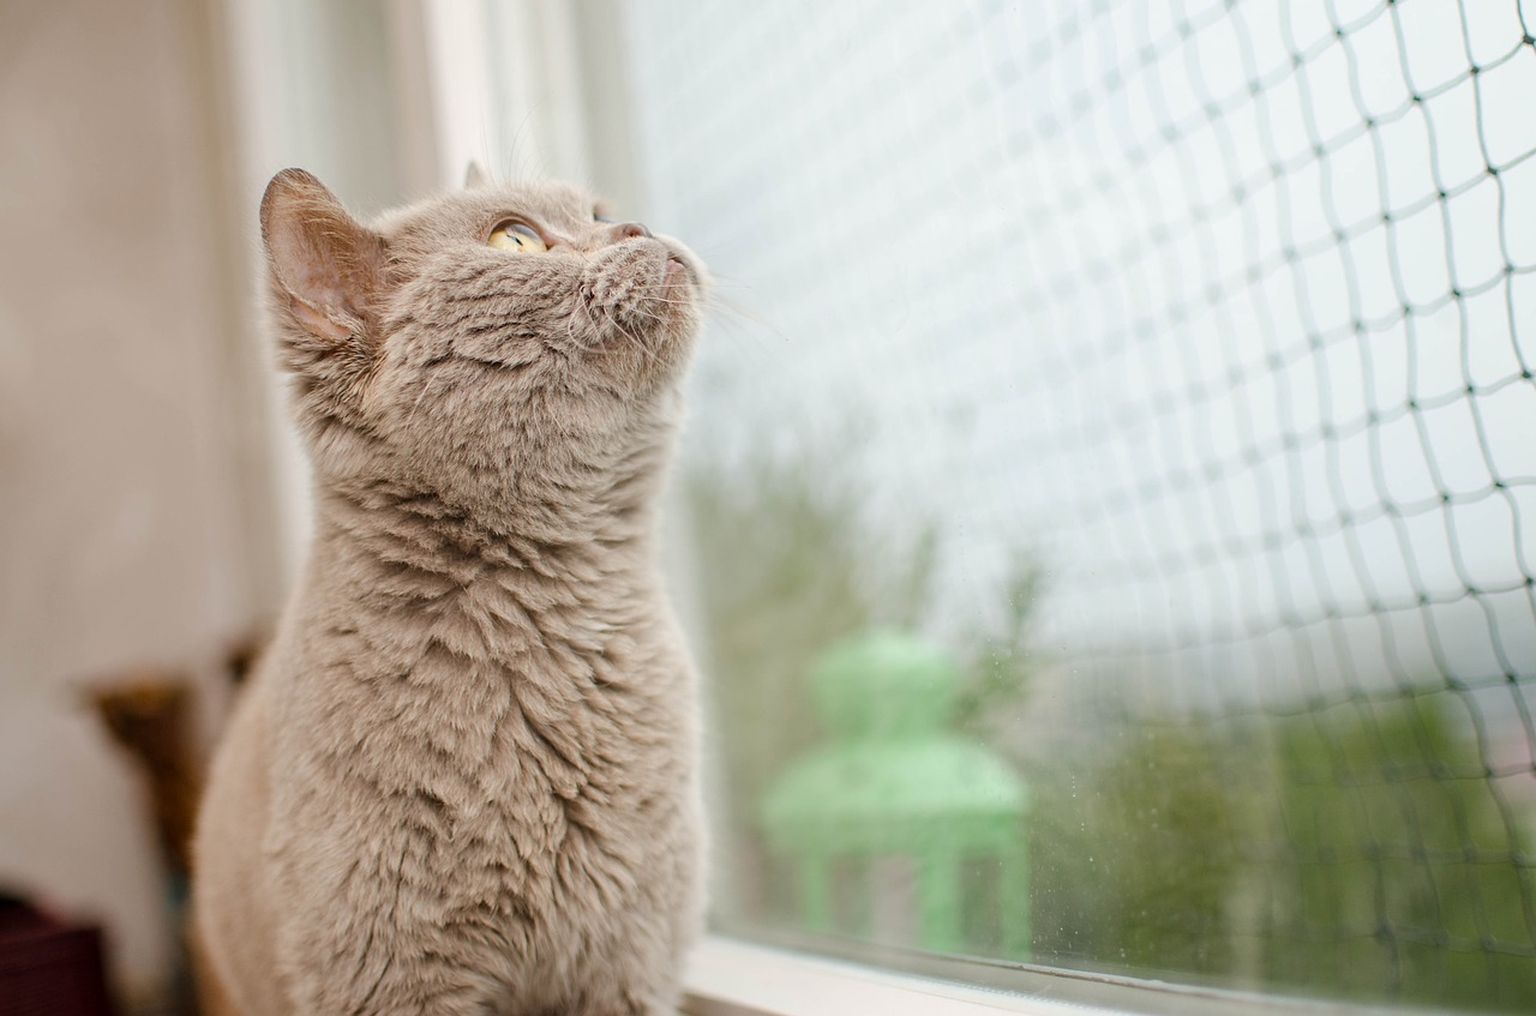 Loomaomanikud, kes lasevad oma lemmikul avatud aknal istuda, sageli ei arvestagi, et kassi ei saa usaldada nagu inimest.